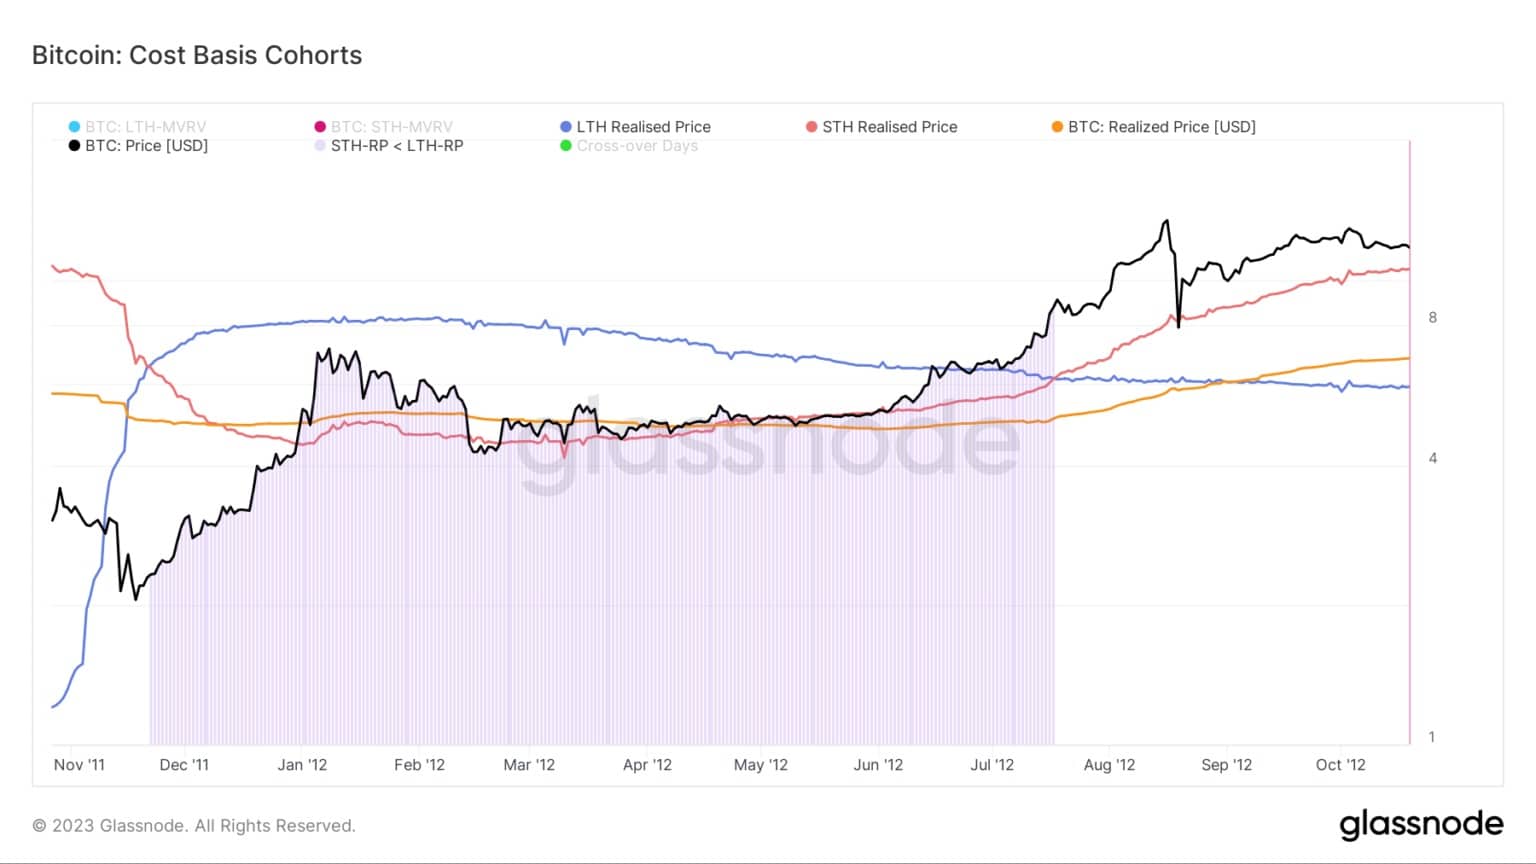 Gráfico mostrando a base de custos para coortes Bitcoin durante o mercado de ursos 2011/2012 (Fonte: Glassnode)